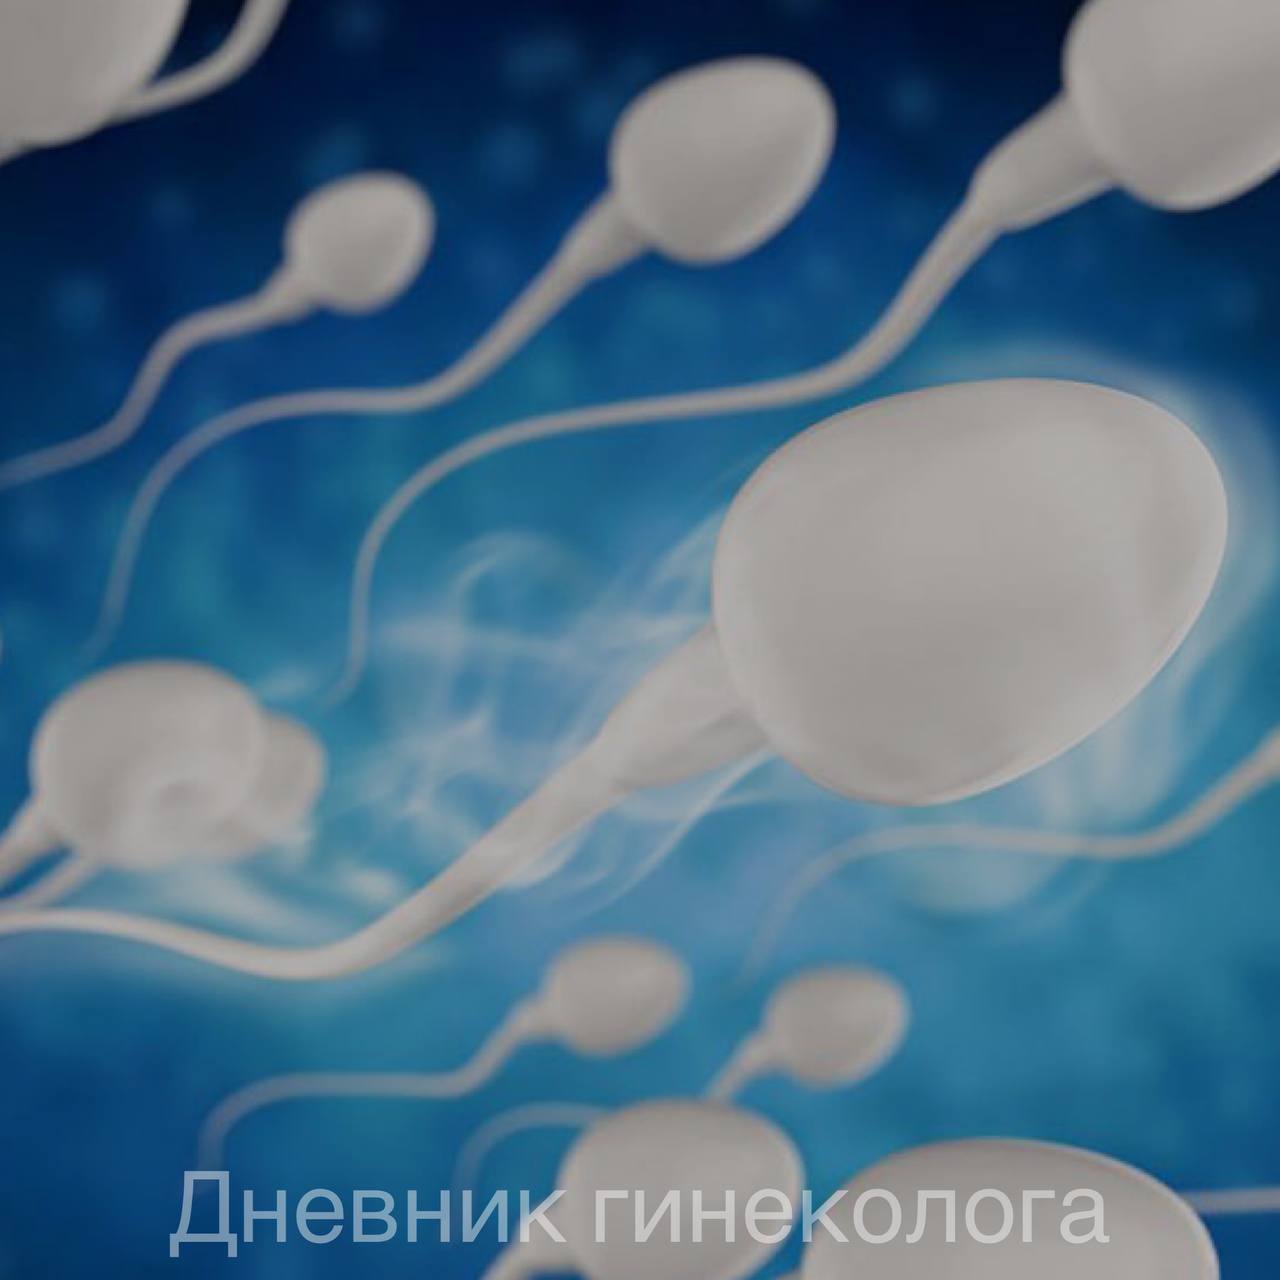 мужская сперма для женского здоровья фото 25